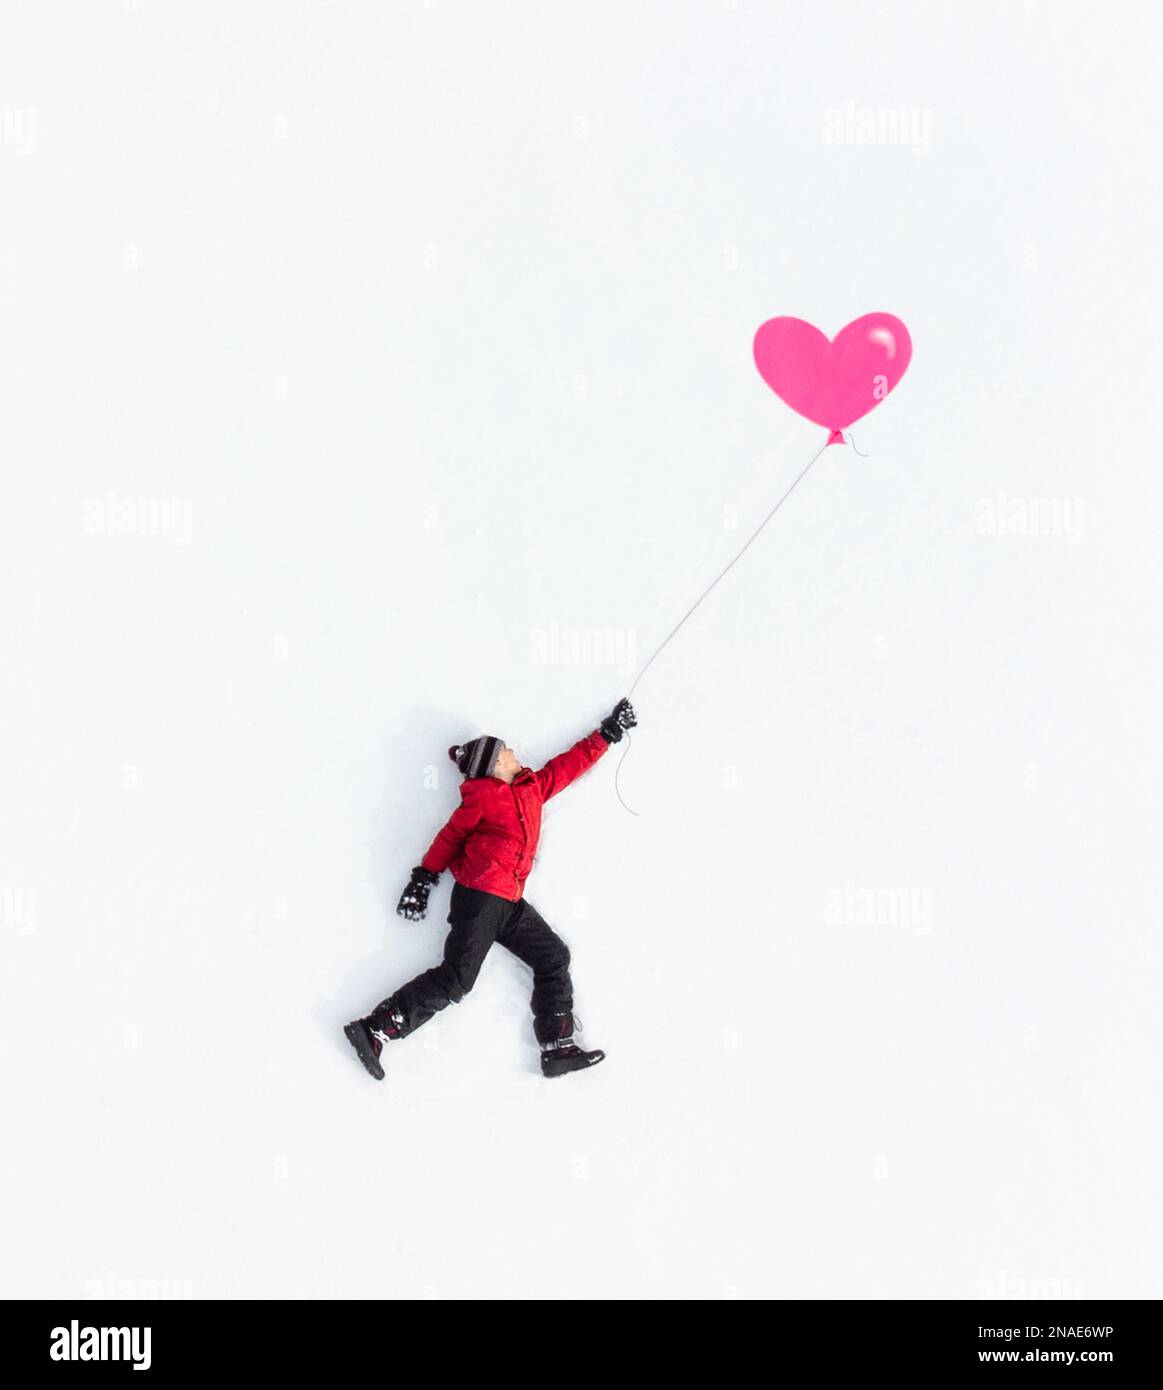 Luftaufnahme eines Jungen, der in Winterkleidung mit pinkem Ballon auf Schnee liegt. Stockfoto